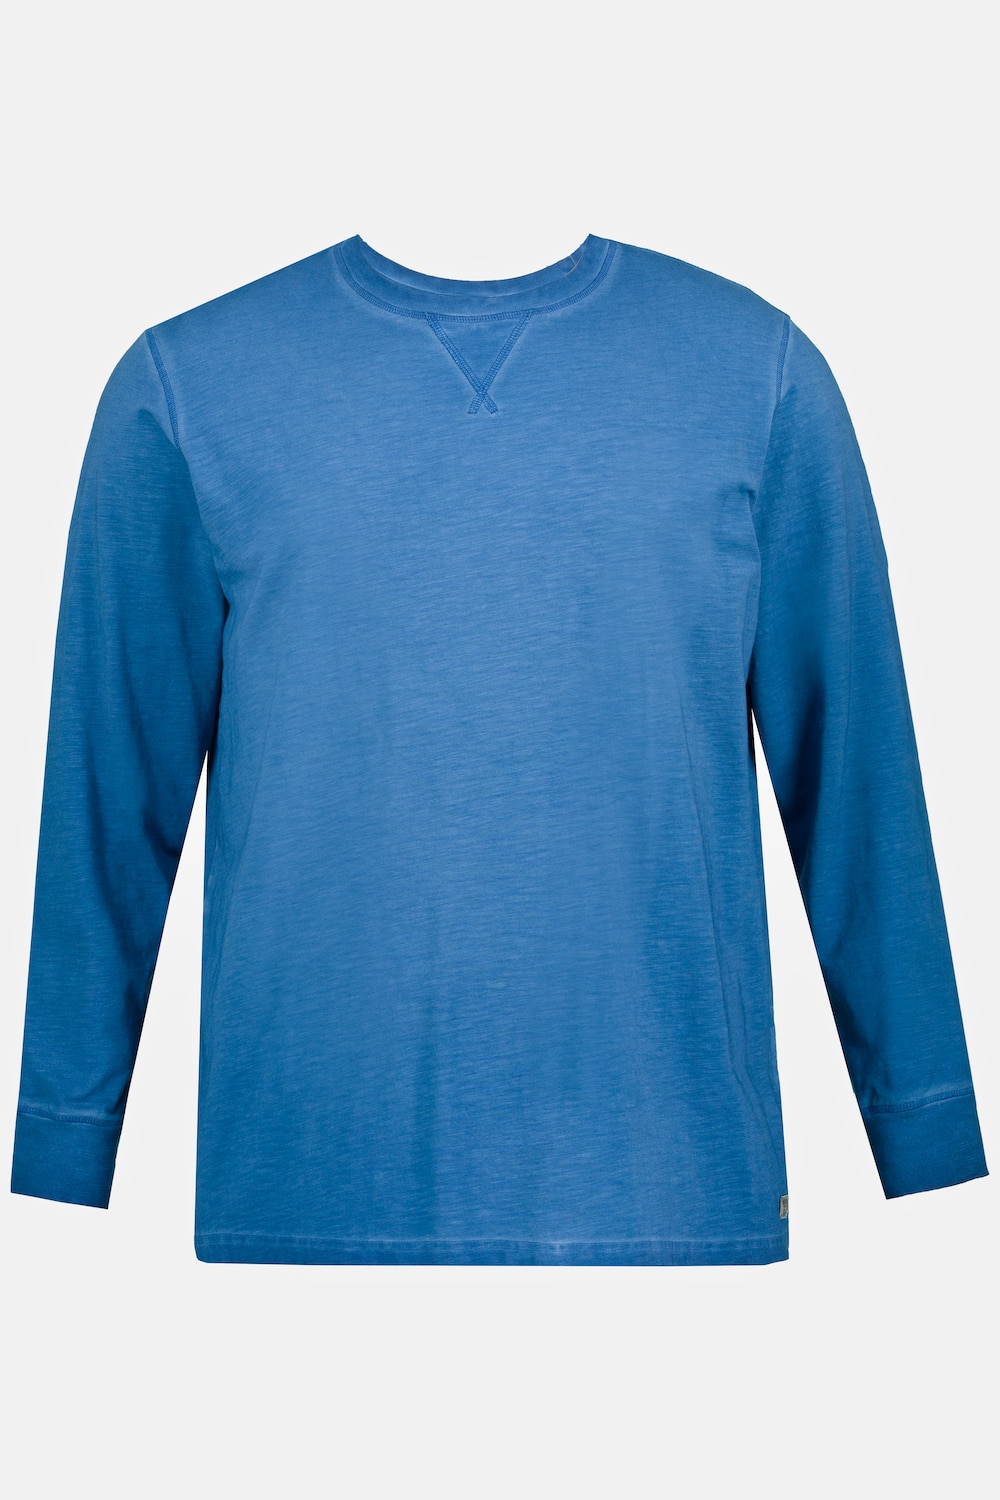 Langarmshirt, Große Größen, Herren, blau, Größe: 4XL, Baumwolle, JP1880 product